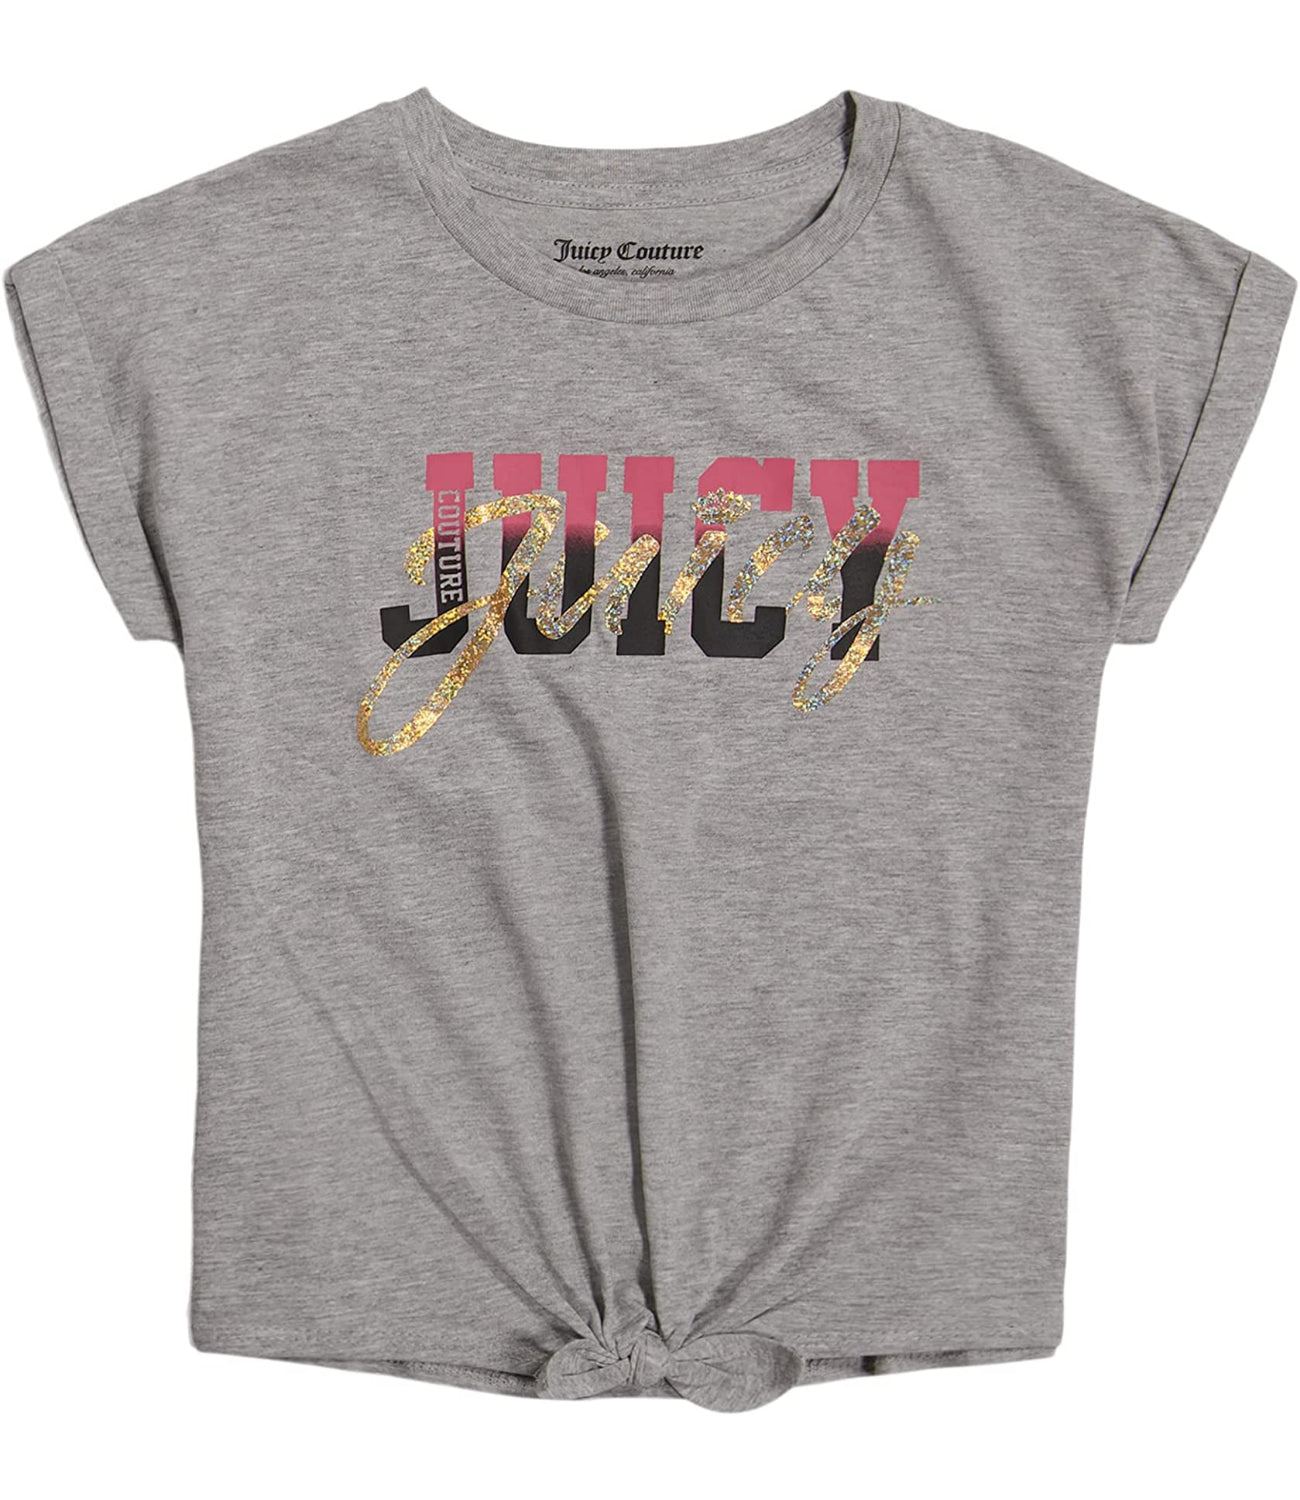 Juicy Couture Girls 7-16 Short Sleeve Script Glitter T-Shirt